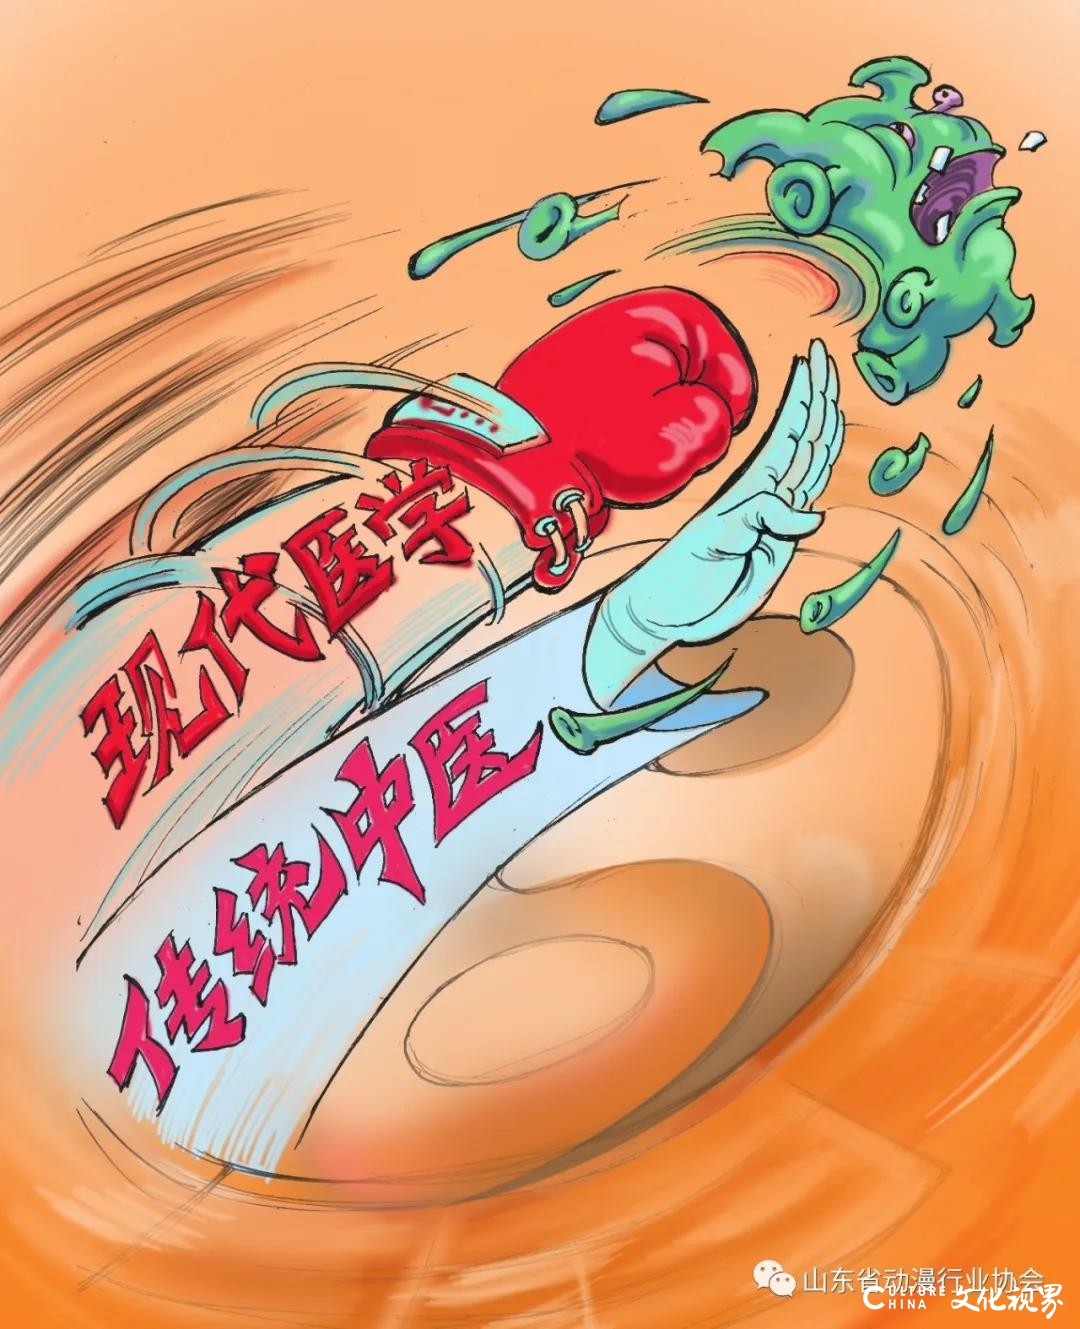 山东省动漫行业协会战“疫”作品《飞沫炸弹》《有力支持》《好梦》等引起广泛关注